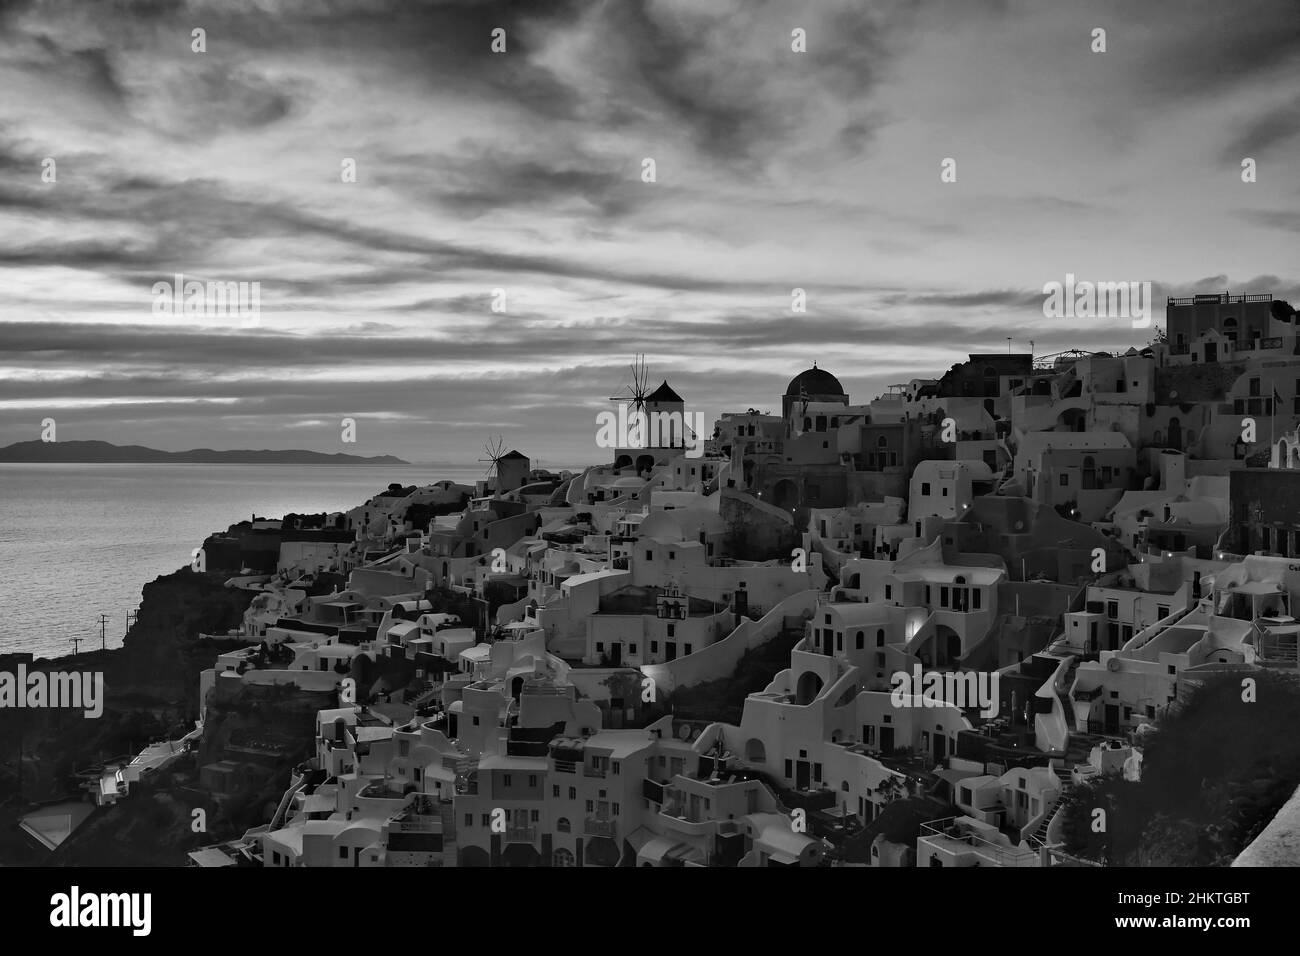 Magnifique coucher de soleil dans le village pittoresque d'Oia à Santorini Grèce en noir et blanc Banque D'Images